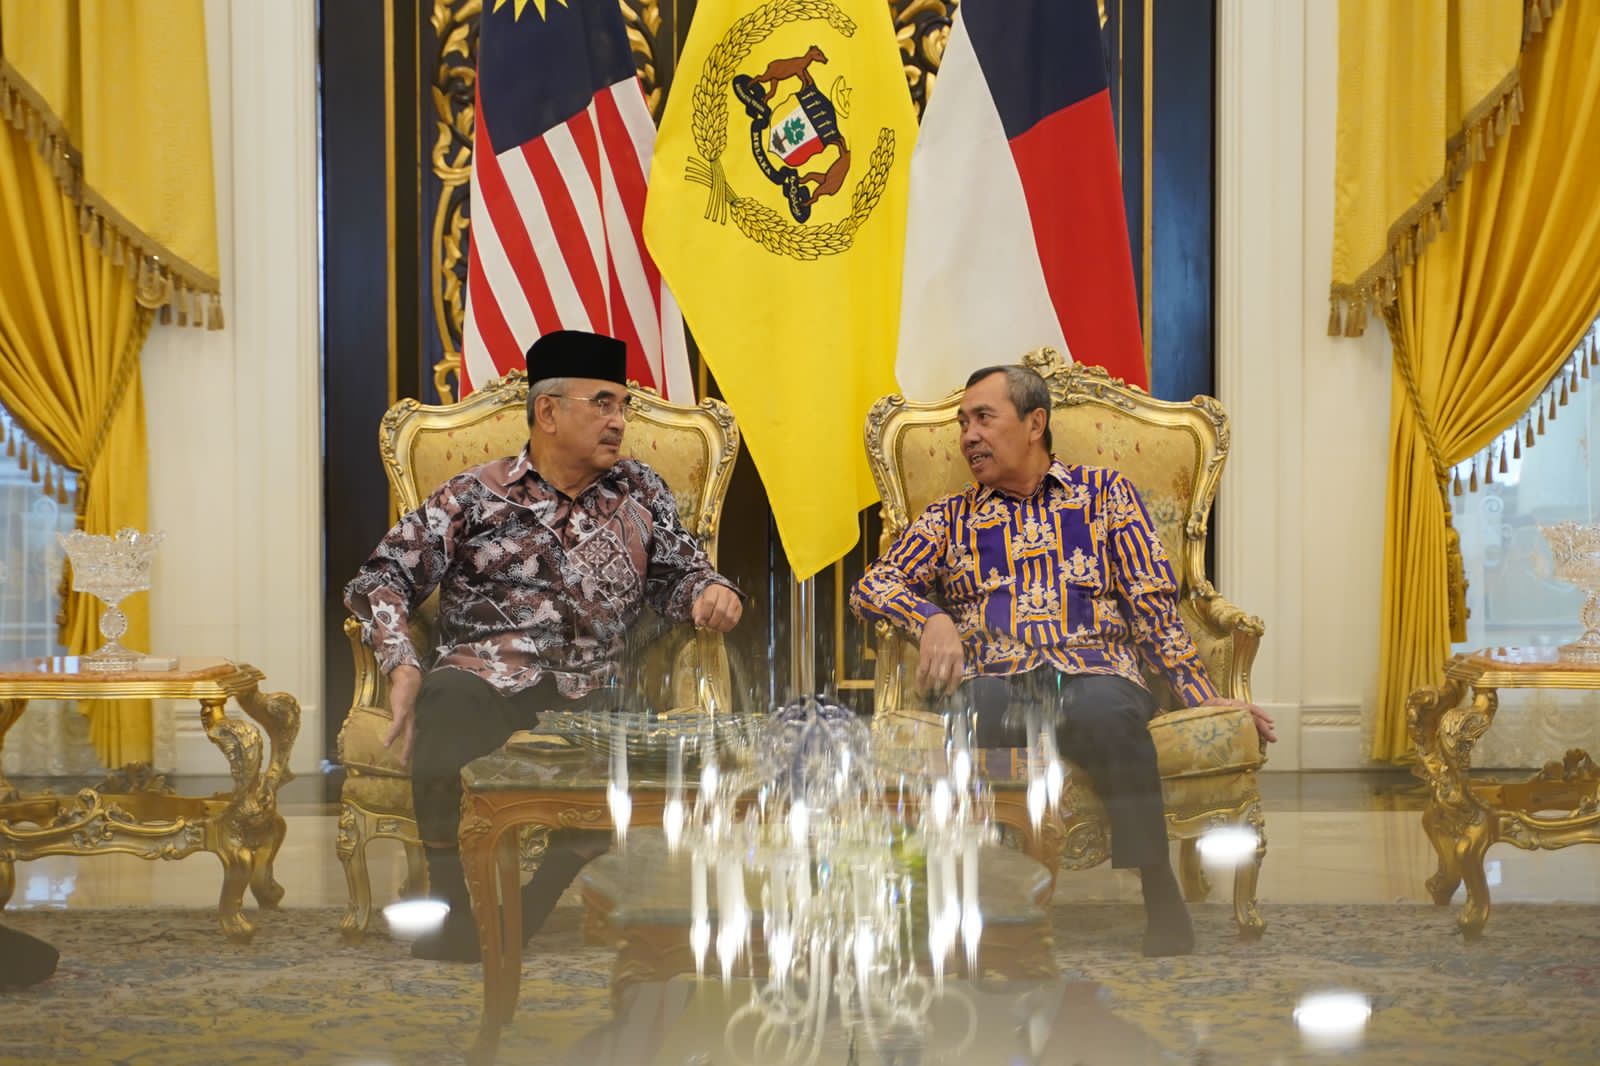 Gubri dan Gubernur Melaka Bahas RoRo Dumai-Melaka, Termasuk Jembatan Melaka-Rupat dan Dumai